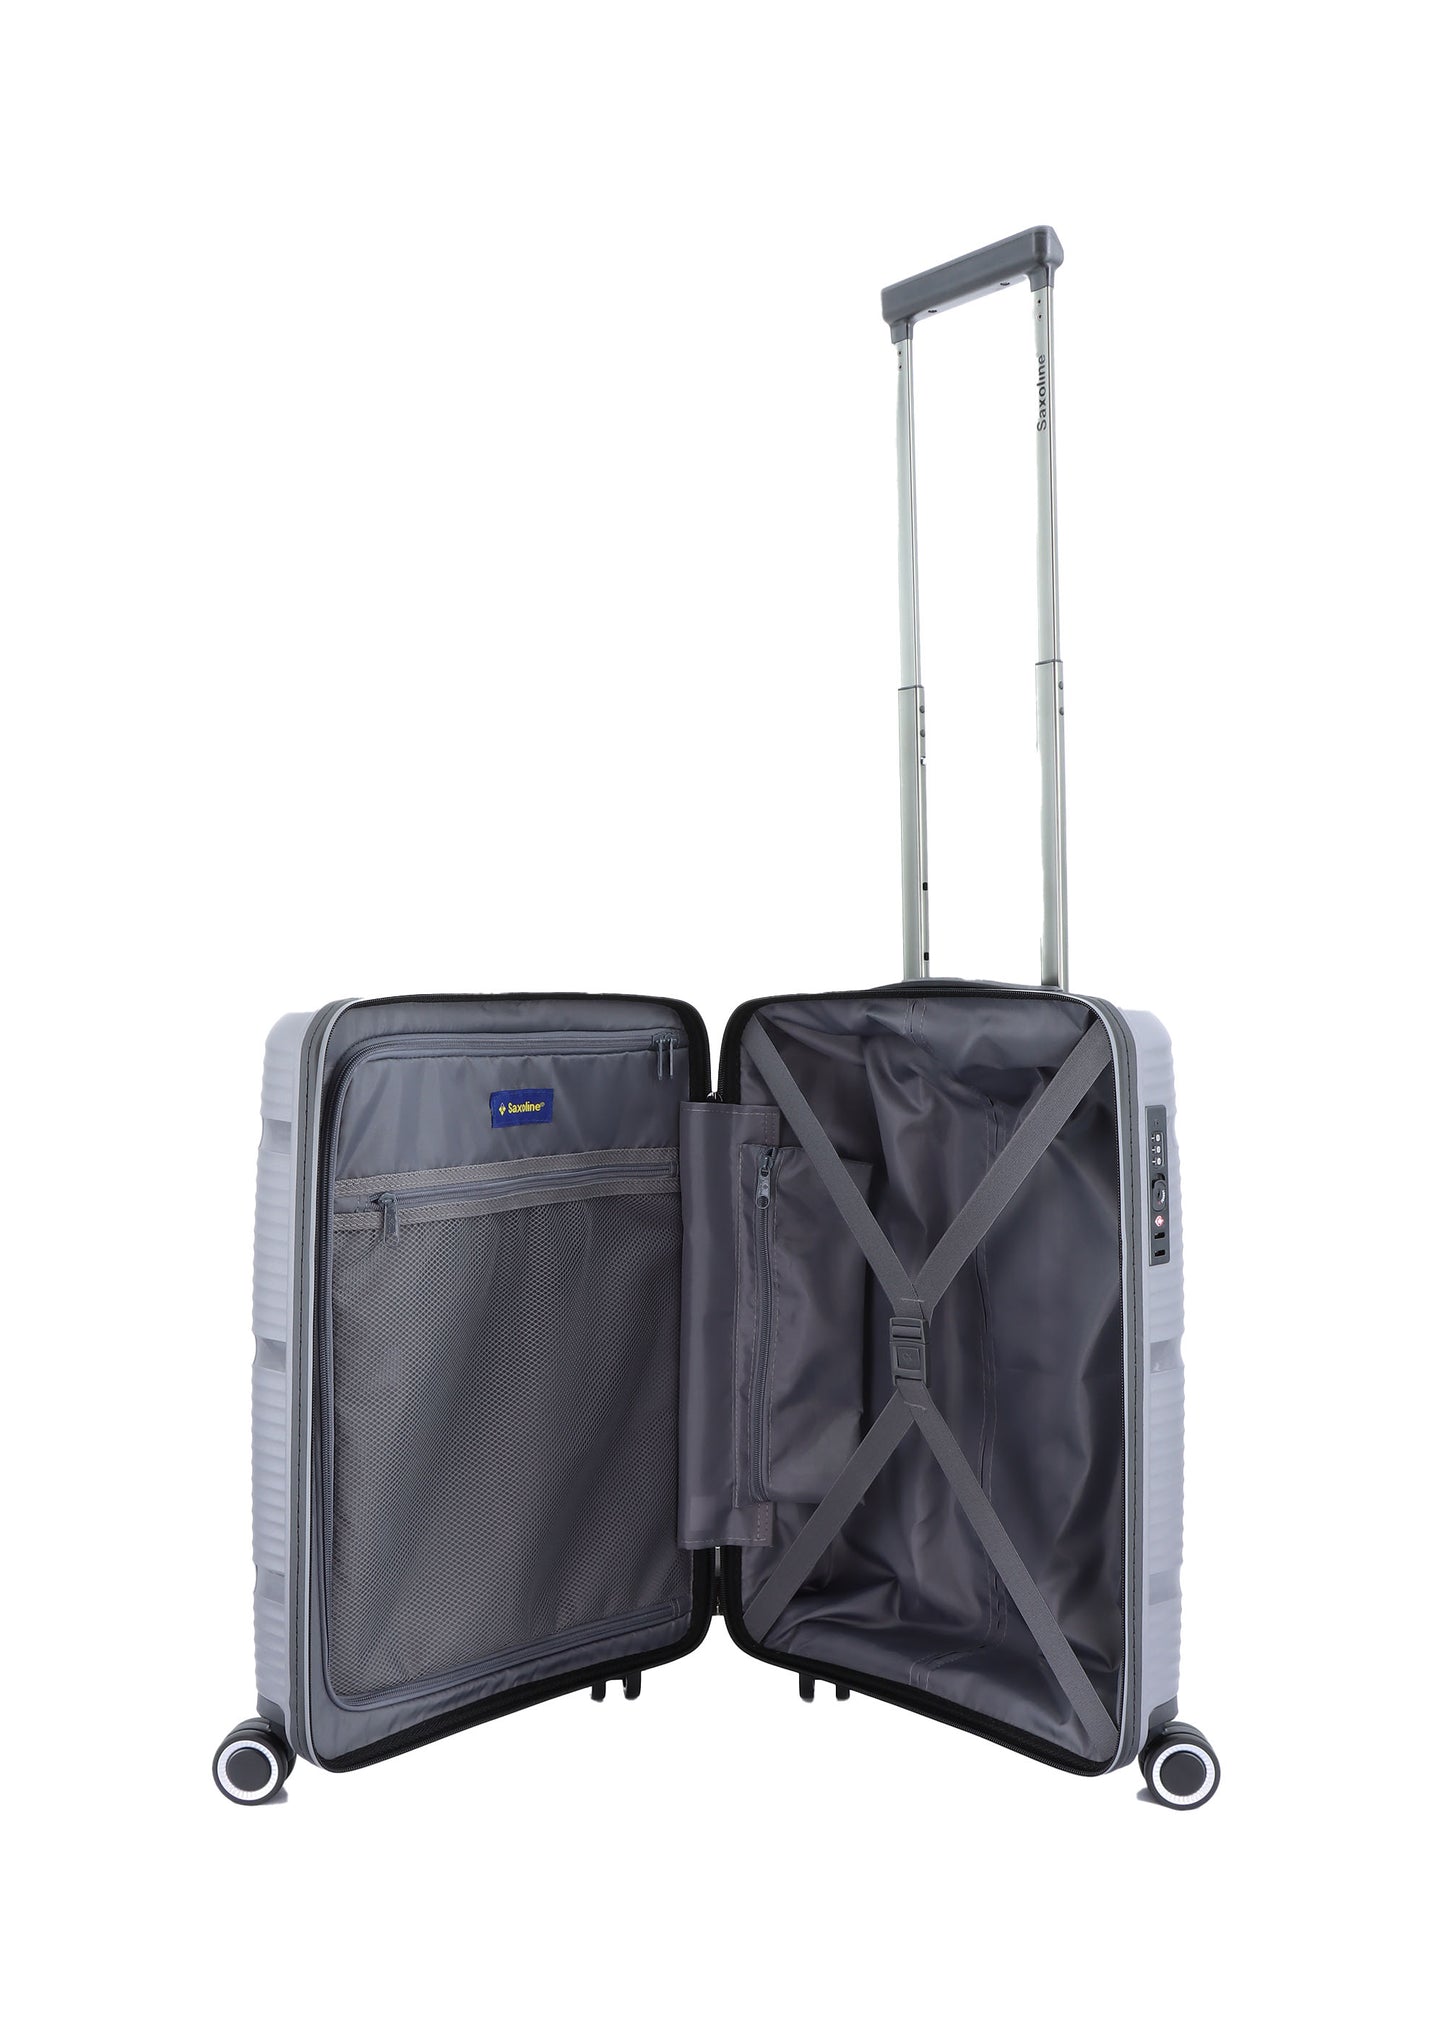 Valise rigide pour bagage à main Saxoline / Trolley / Valise de voyage - 54 cm (Petite) - Taupe